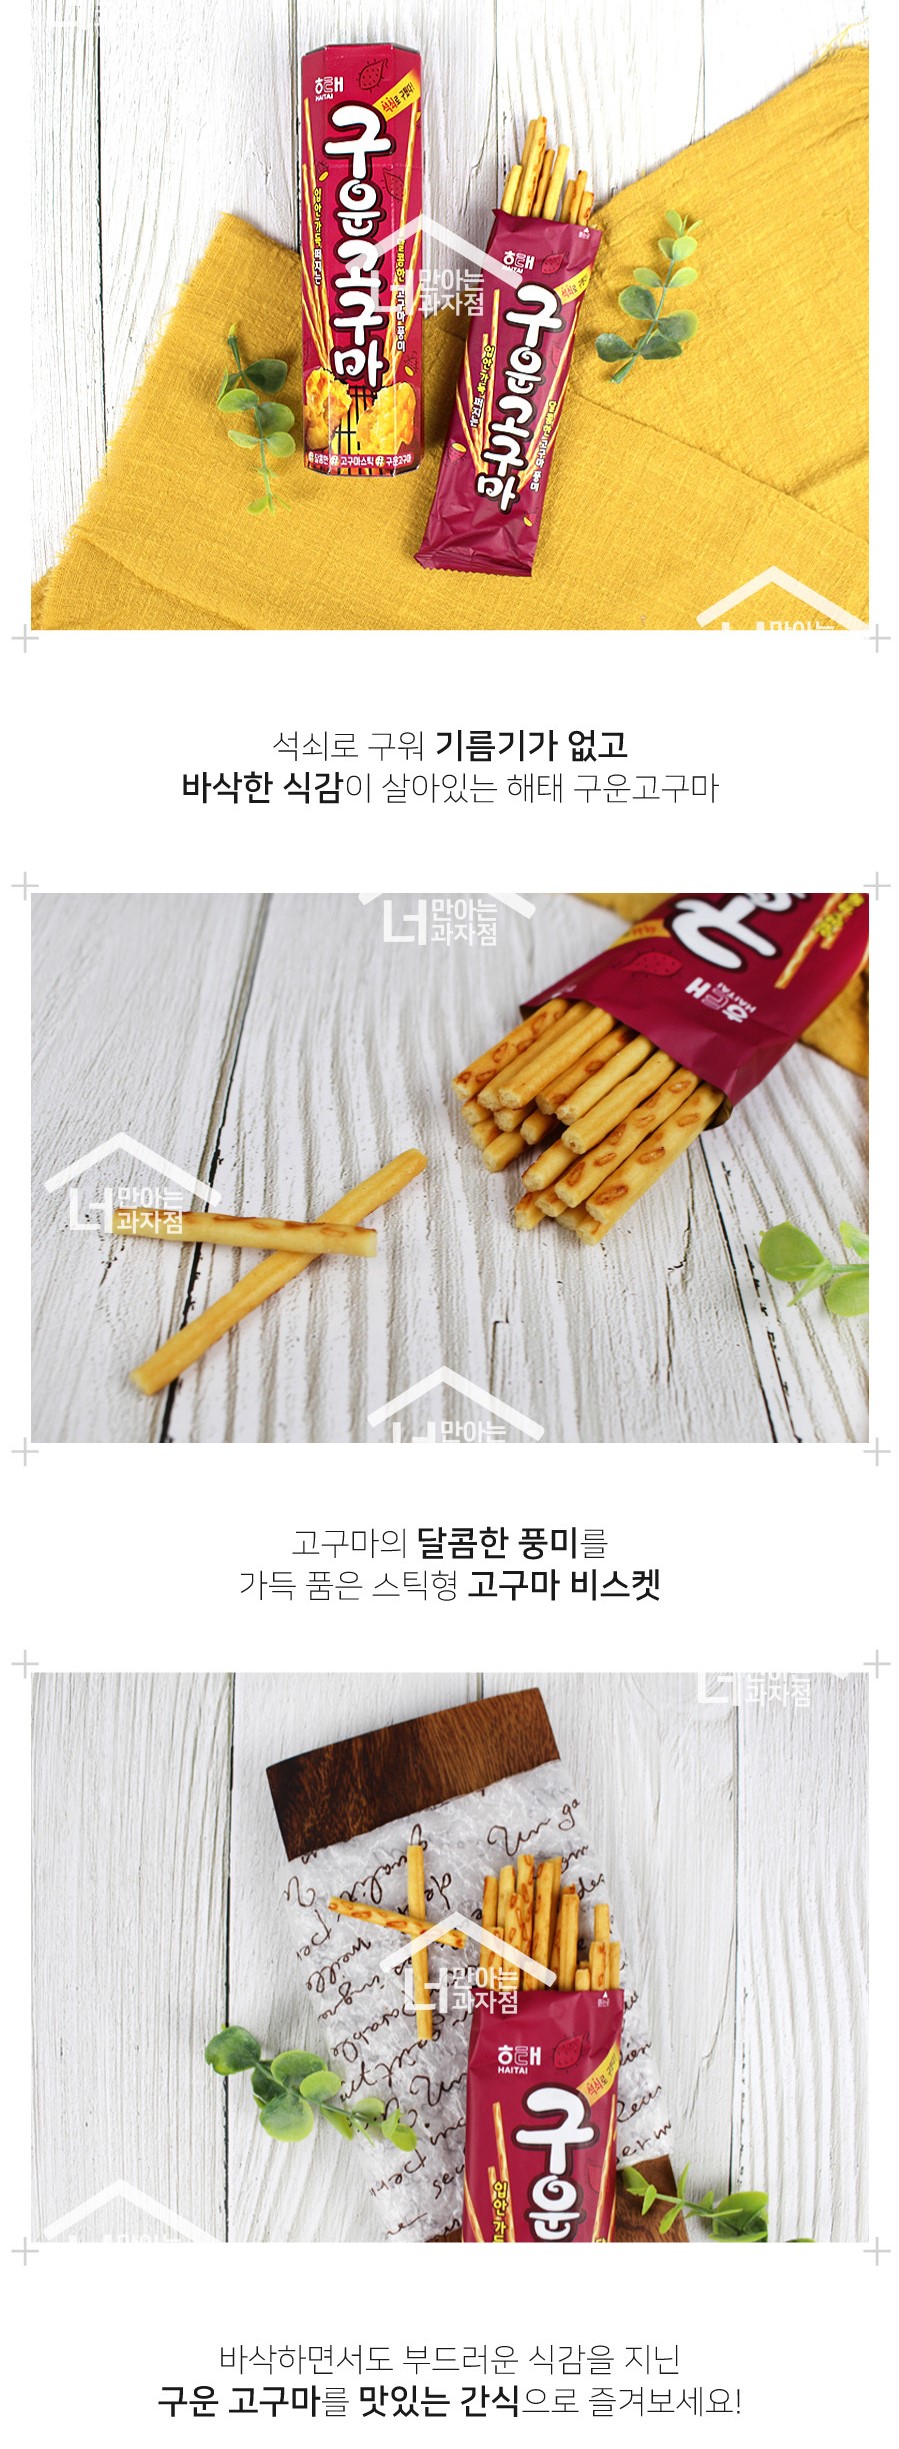 韓國食品-[해태] 구운고구마 27g